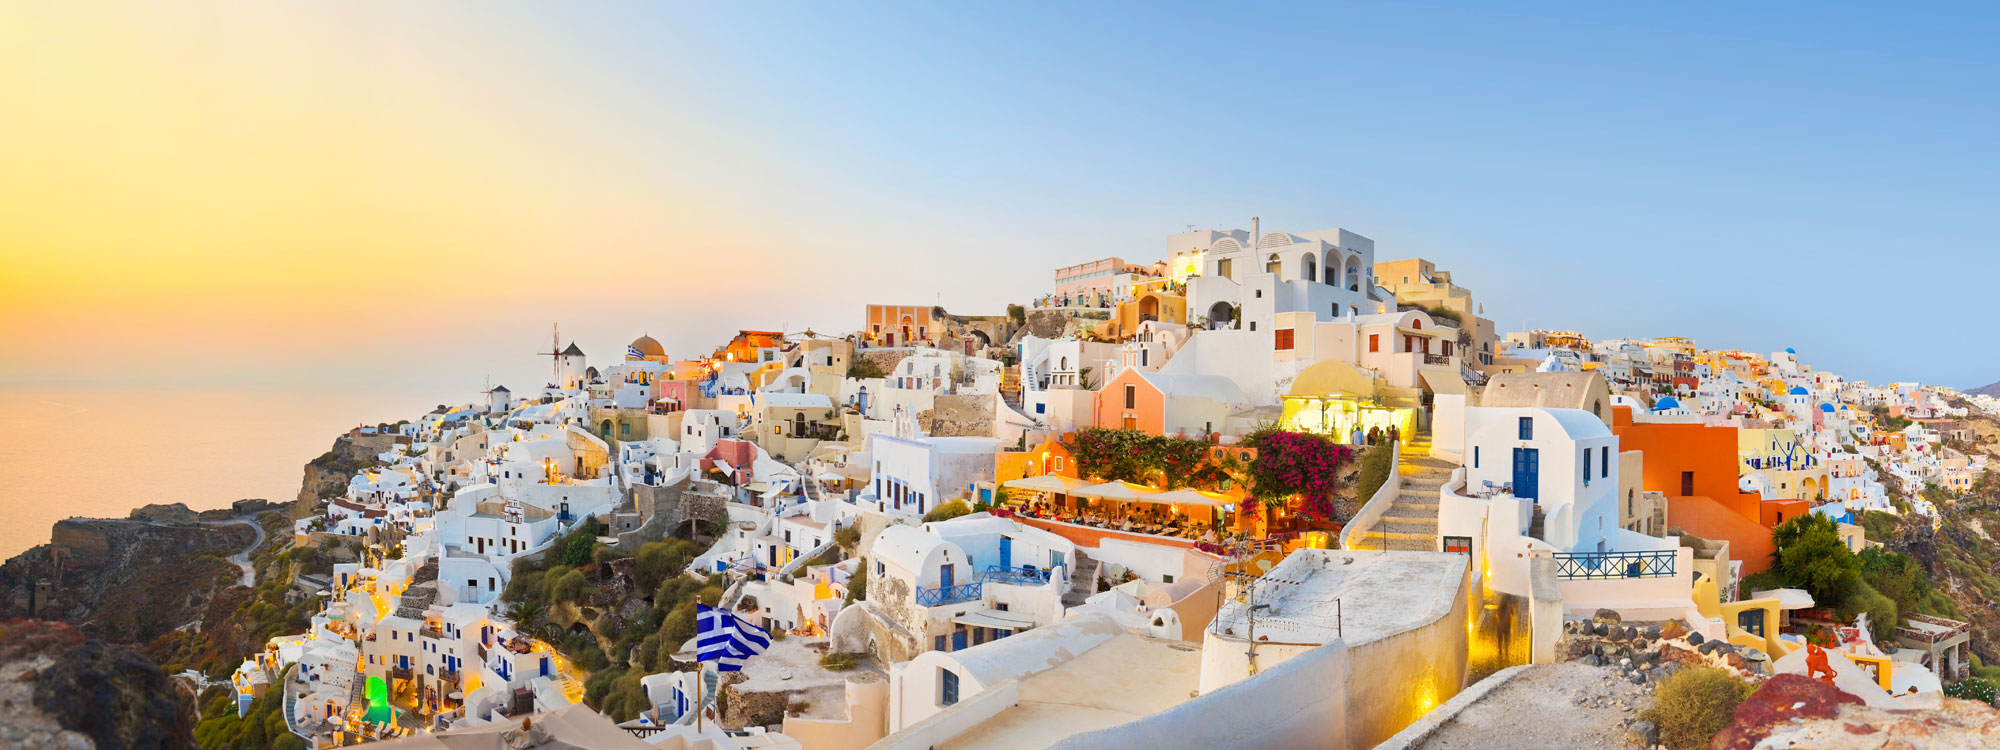 Sommerurlaub in Griechenland - jetzt günstig buchen